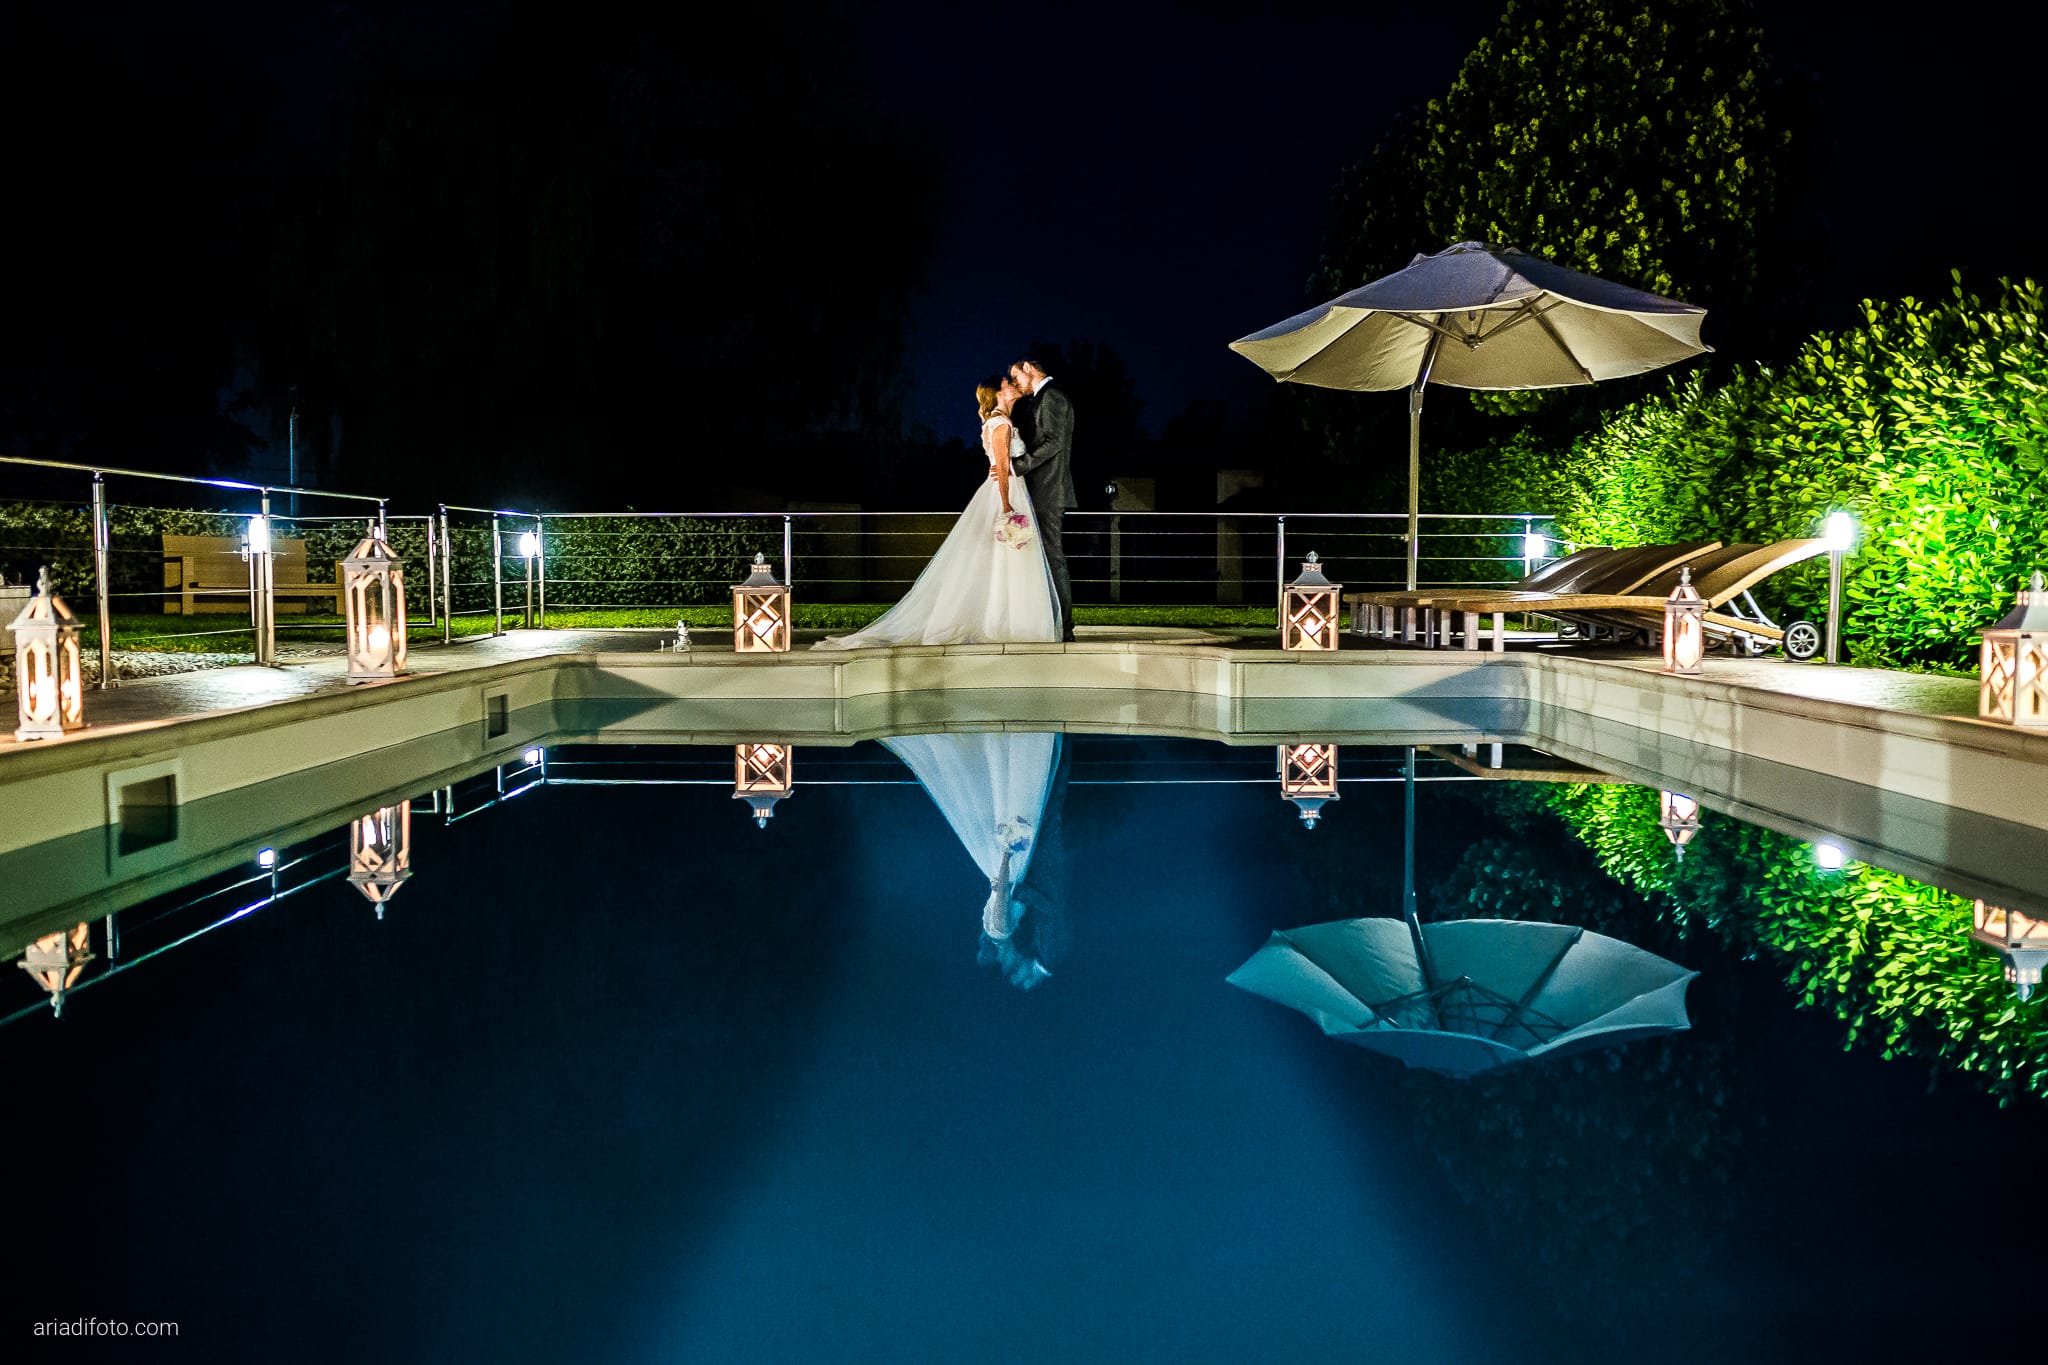 Sandra Lorenzo Matrimonio Lestizza Riviera Pradamano Udine ritratti sposi notte piscina lanterne